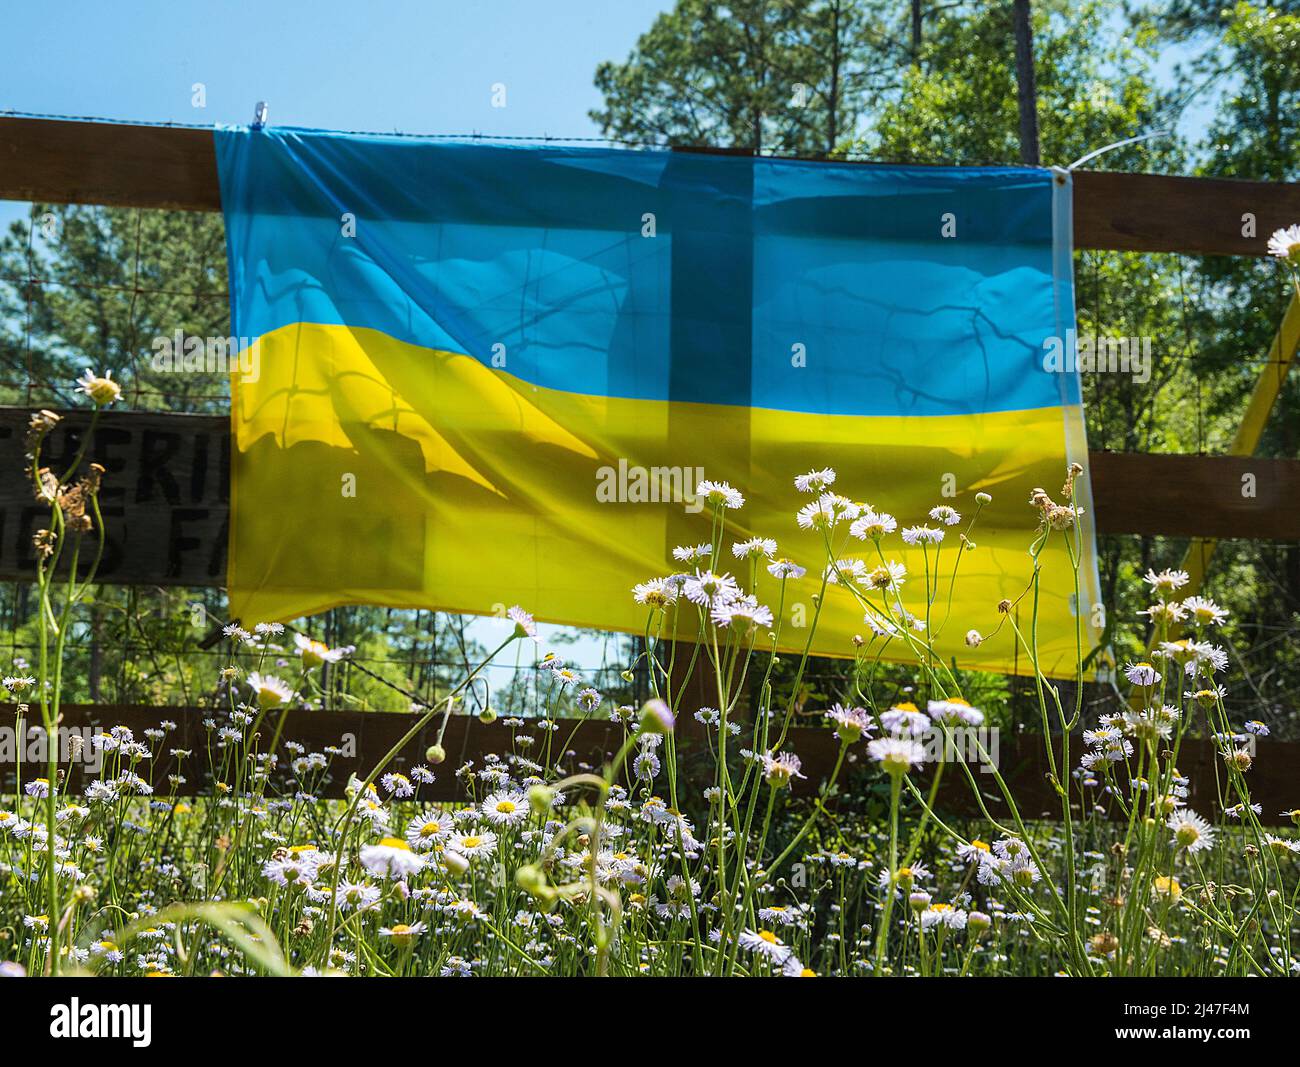 Bandera ucraniana en una zona rural del centro norte de Florida en solidaridad y unión con el pueblo de Ucrania. Foto de stock